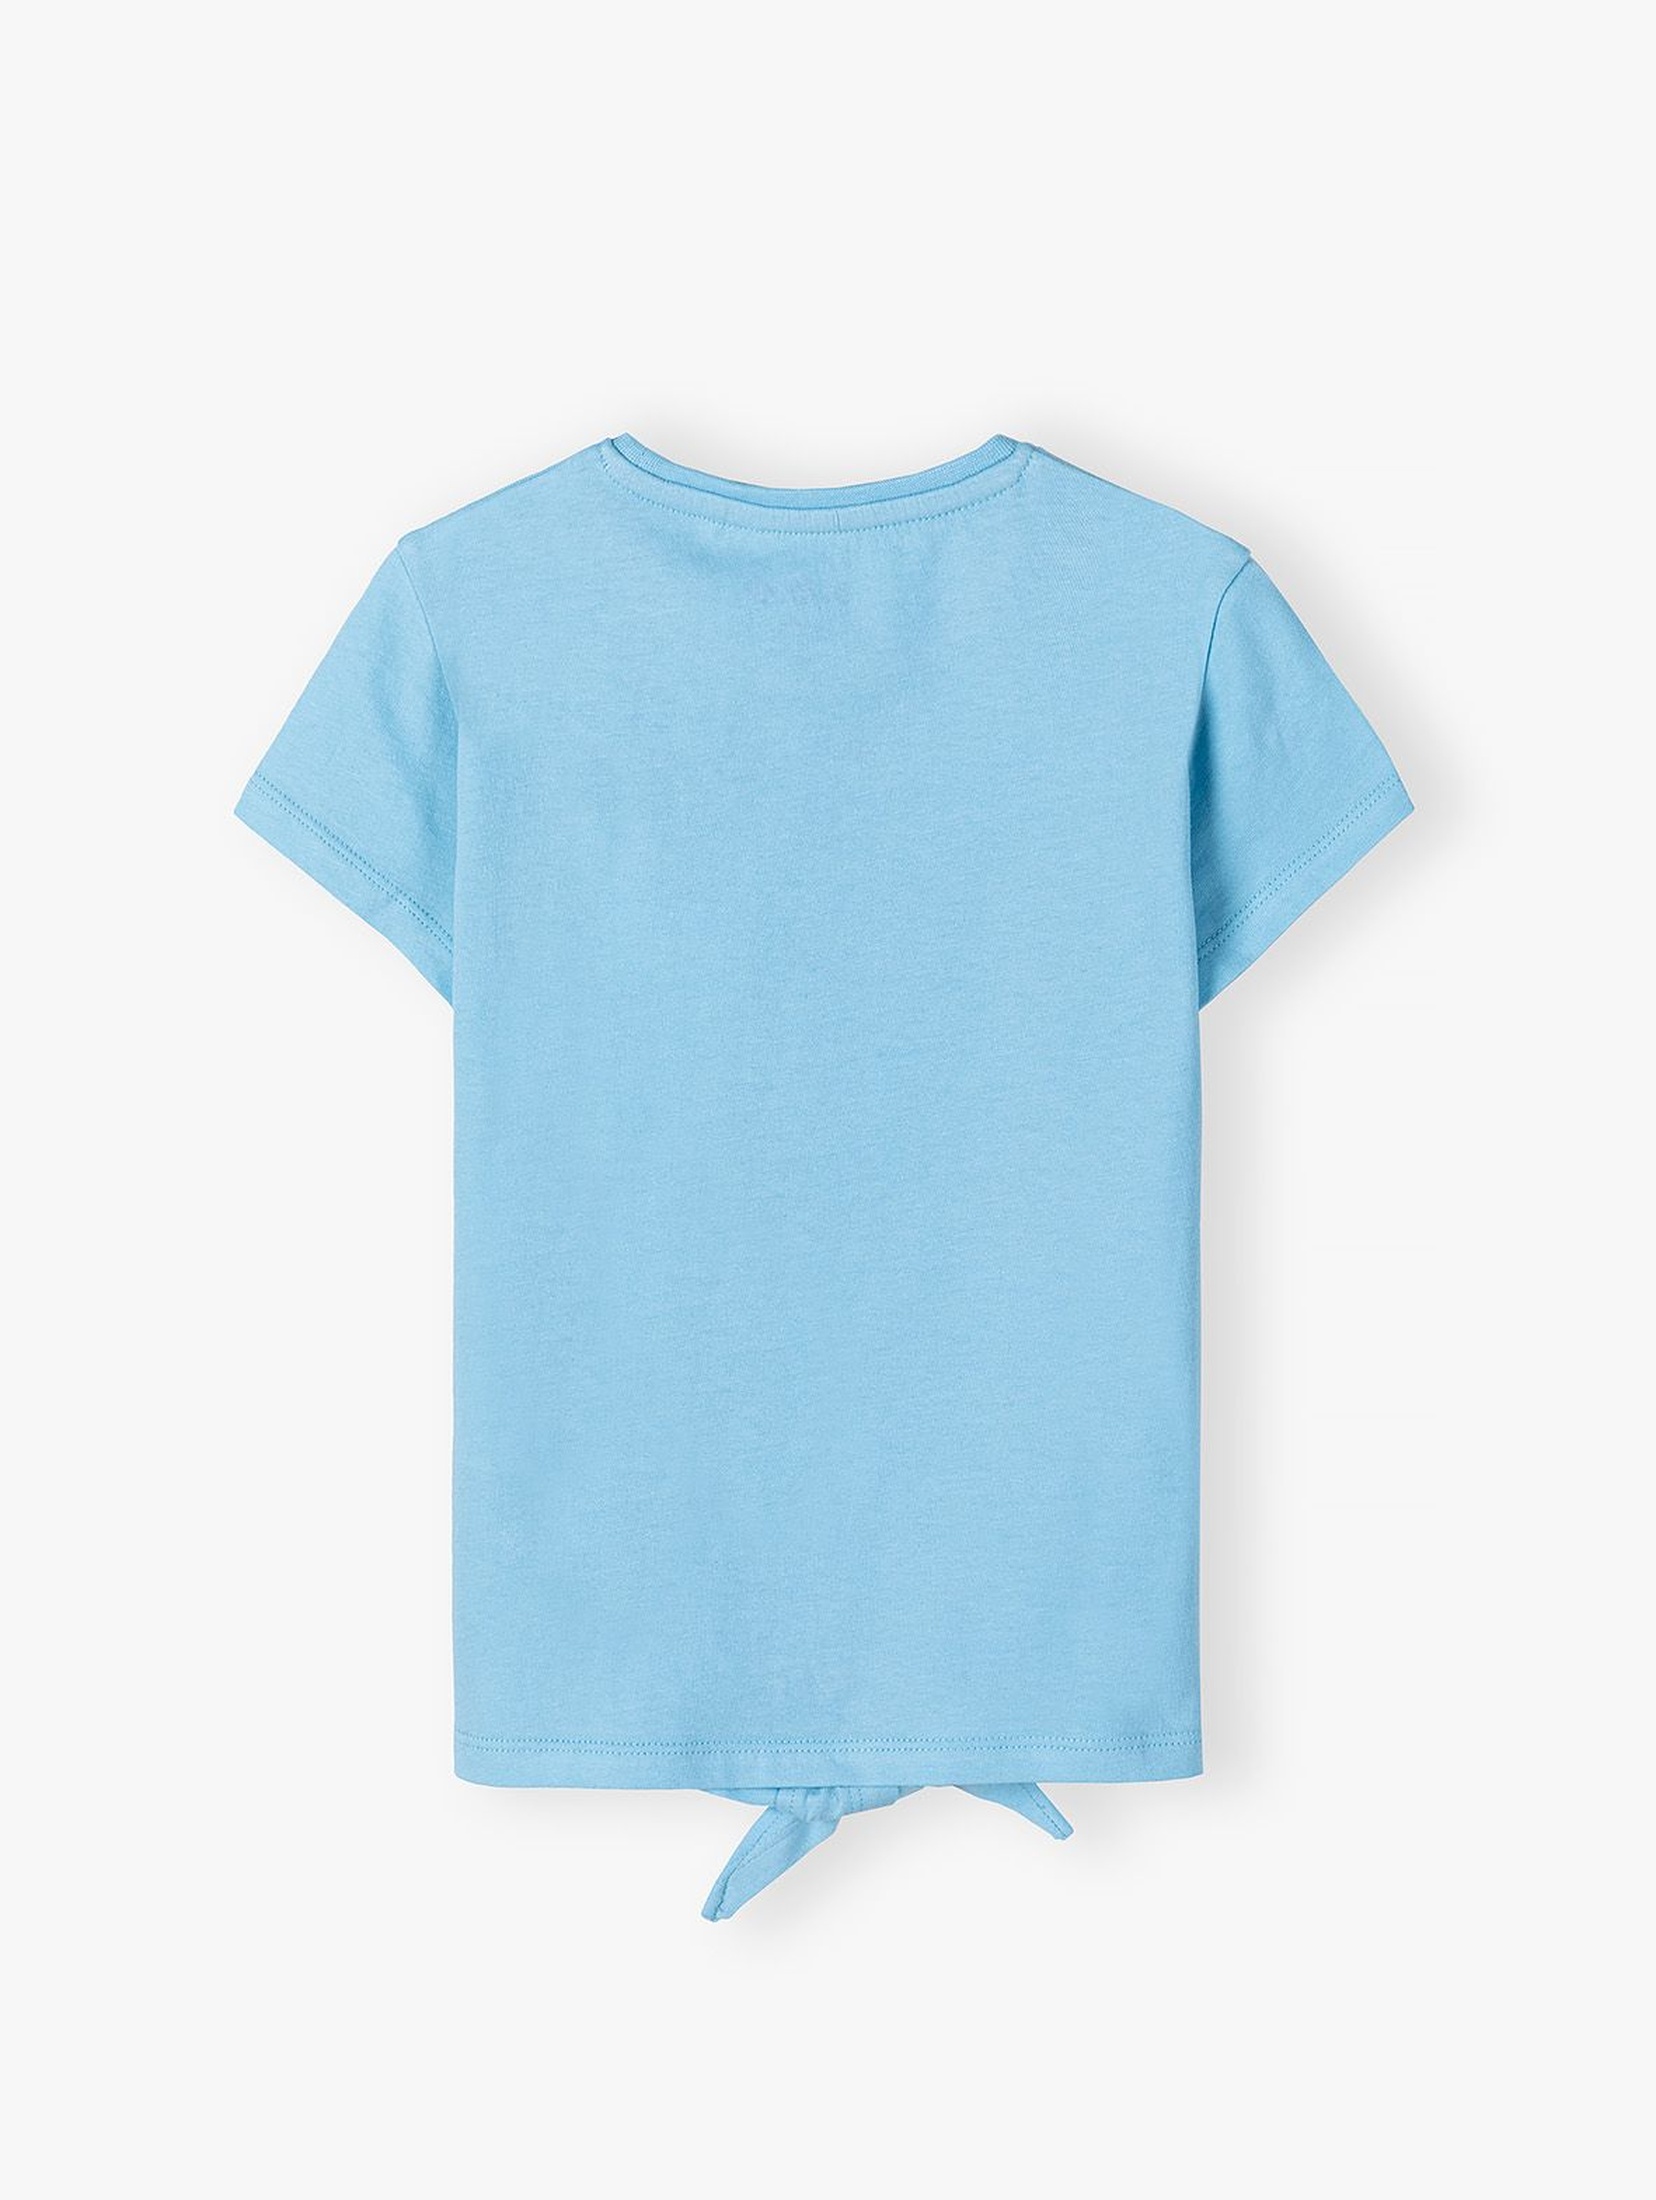 Dzianinowy T-shirt dziewczęcy - niebieski Sea & Sun